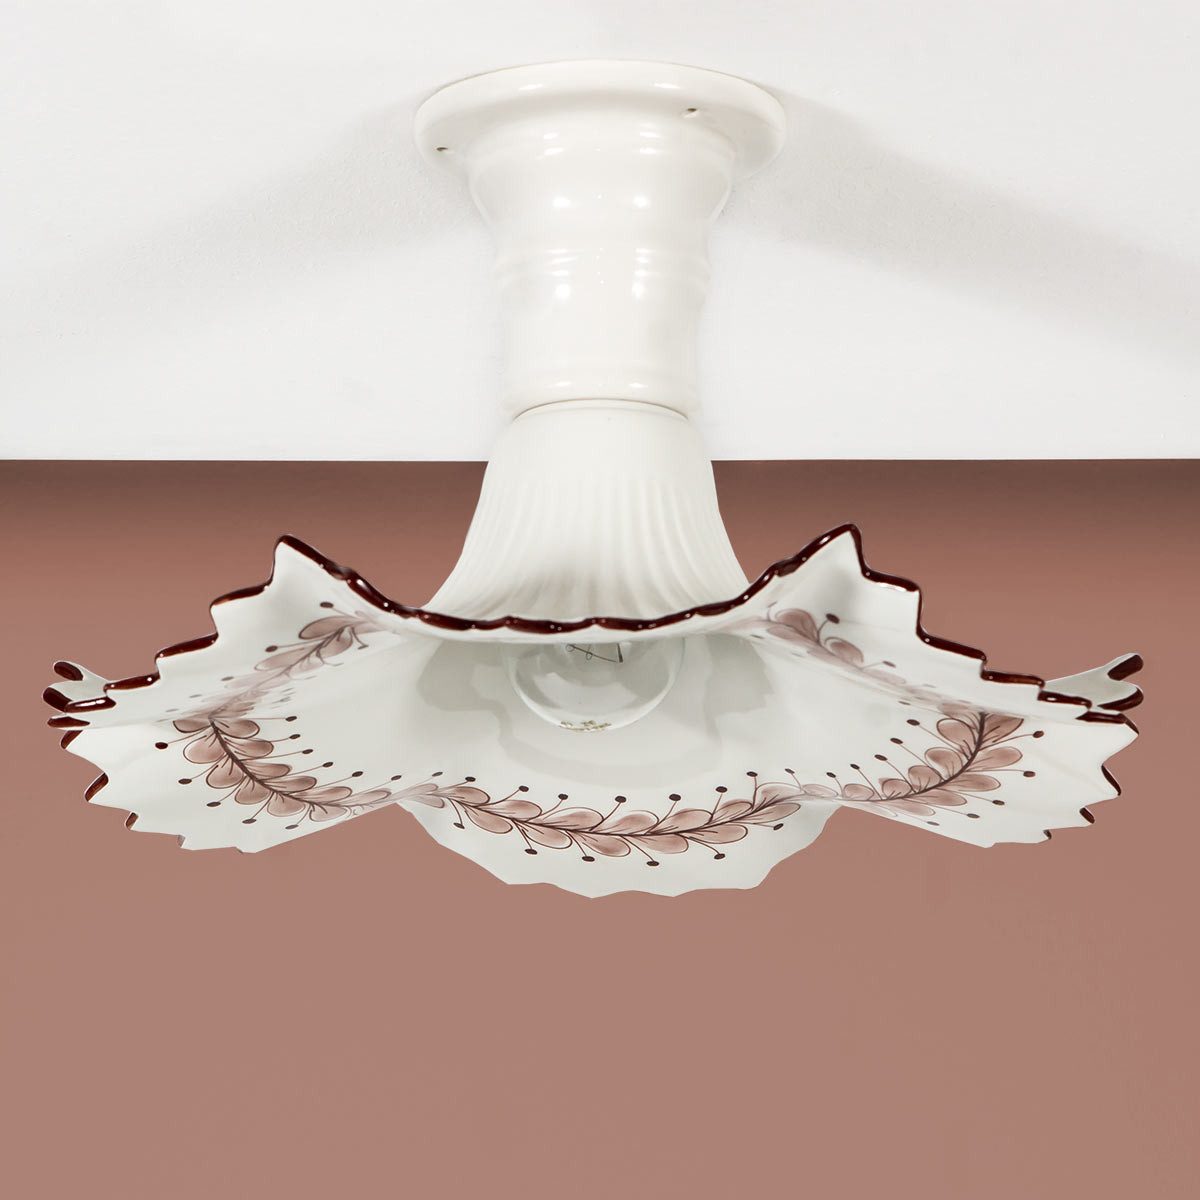 Helios Leuchten Deckenleuchte Küchenlampe Keramik weiß, Keramiklampe, Deckenlampe, für Esstisch Küche, handgefertigt handbemalt